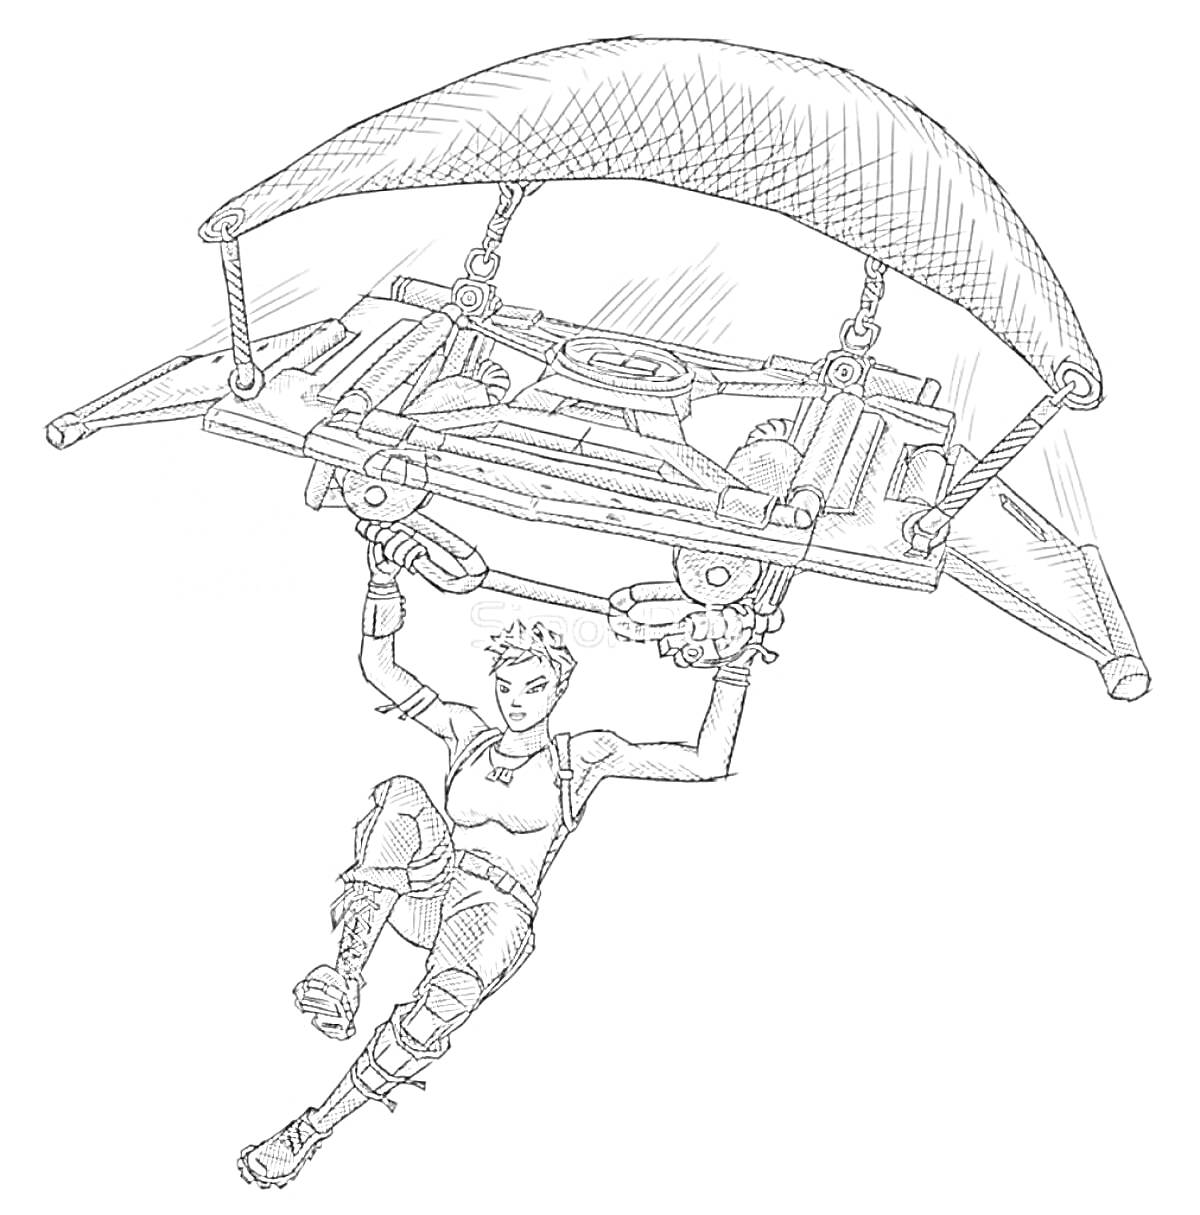 Раскраска Человек с парашютом из ПАБГ, в защитной экипировке и арбалете